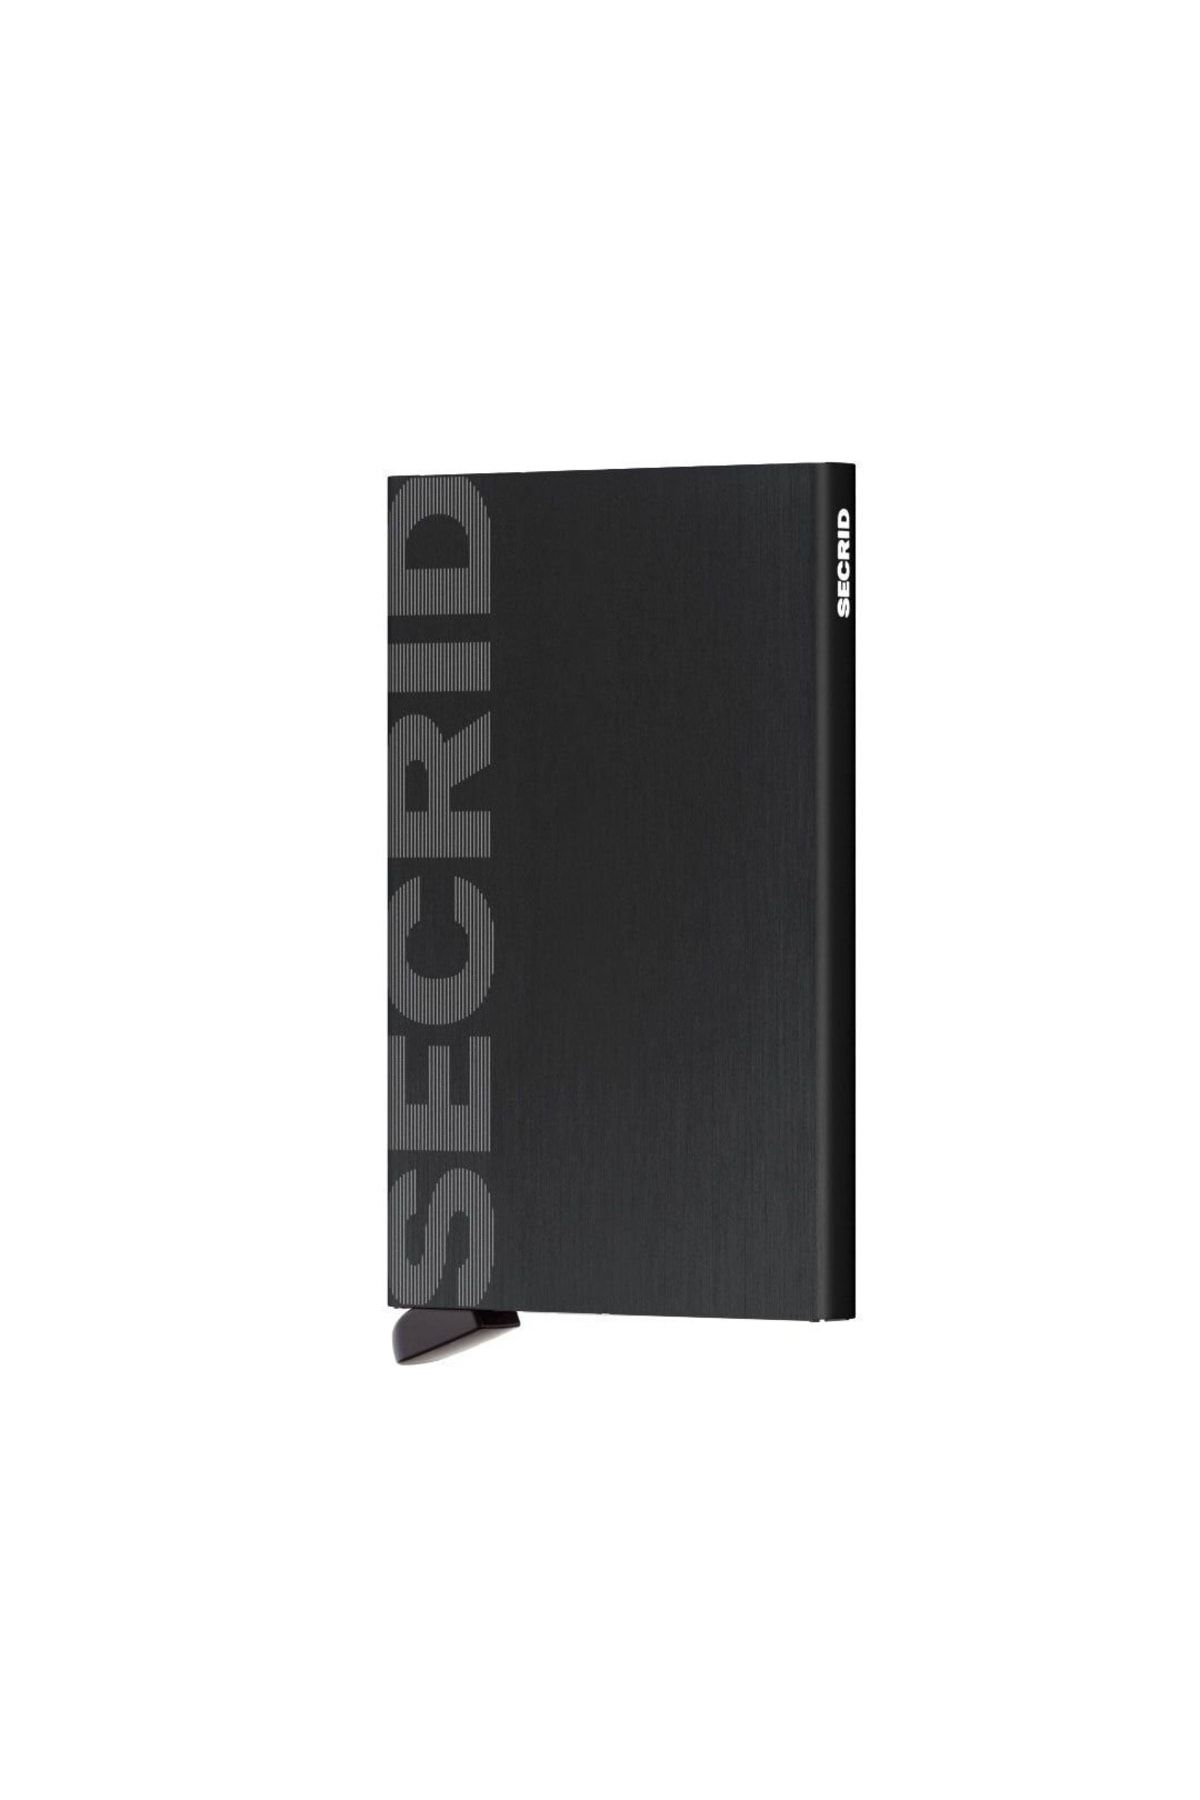 Secrid Card Protector Laser Logo Brushed Black,N/A